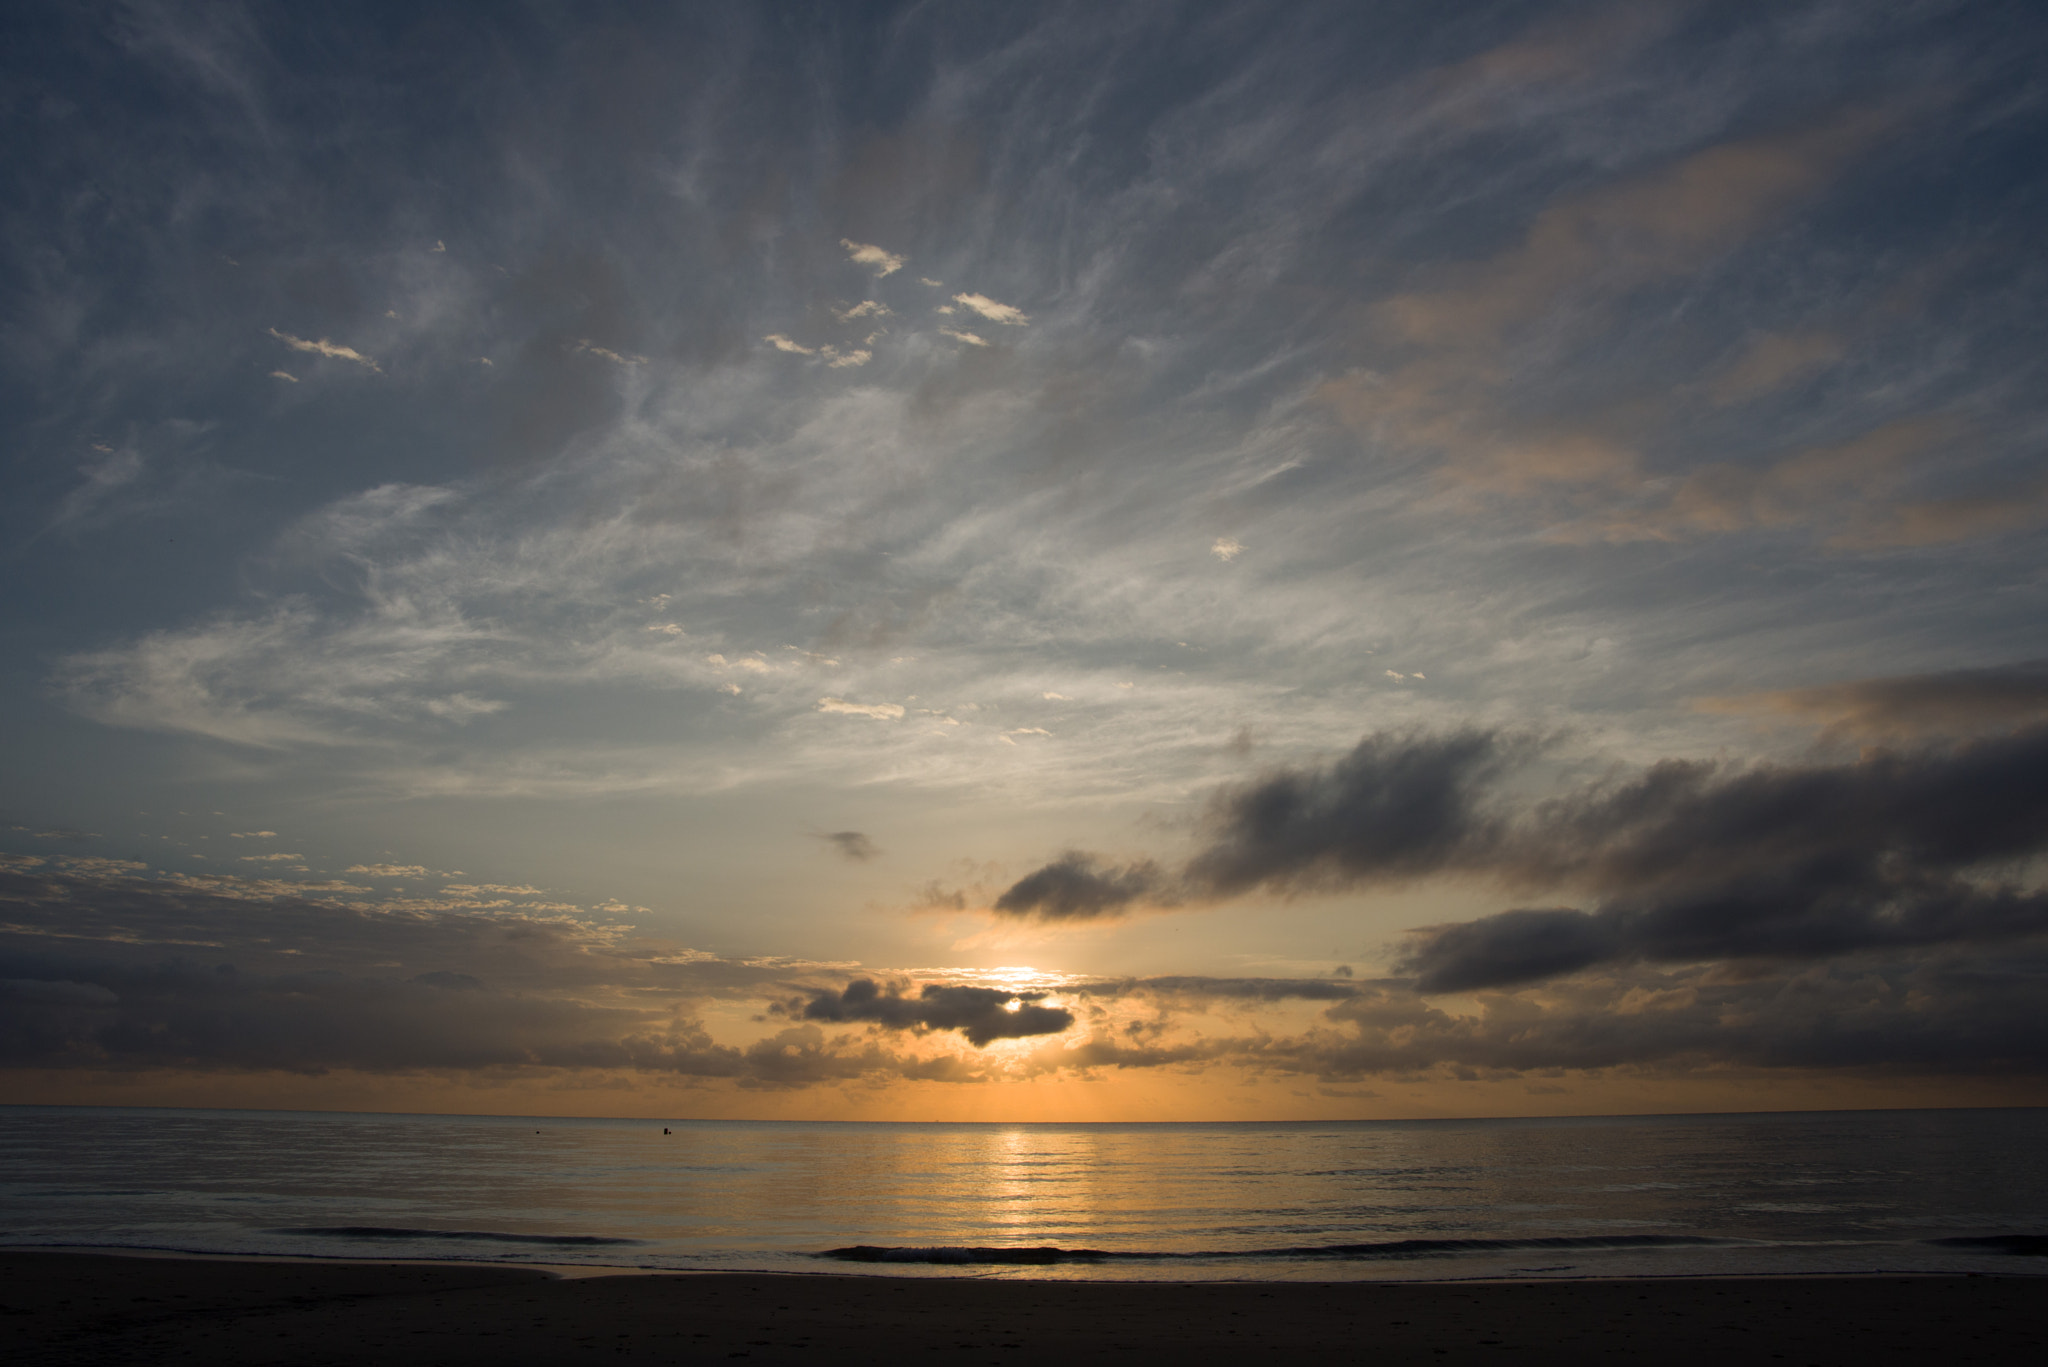 AF Zoom-Nikkor 28-80mm f/3.5-5.6D sample photo. Sunrise, four mile beach, port douglas photography